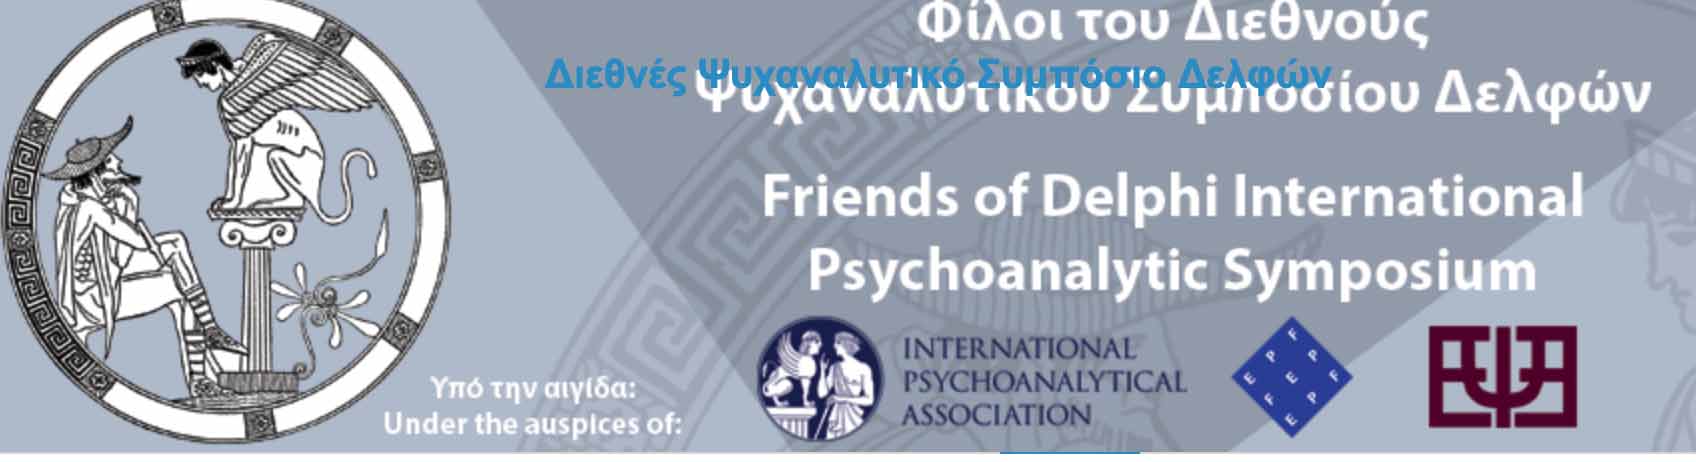 9th Delphi International Psychoanalytic Symposium